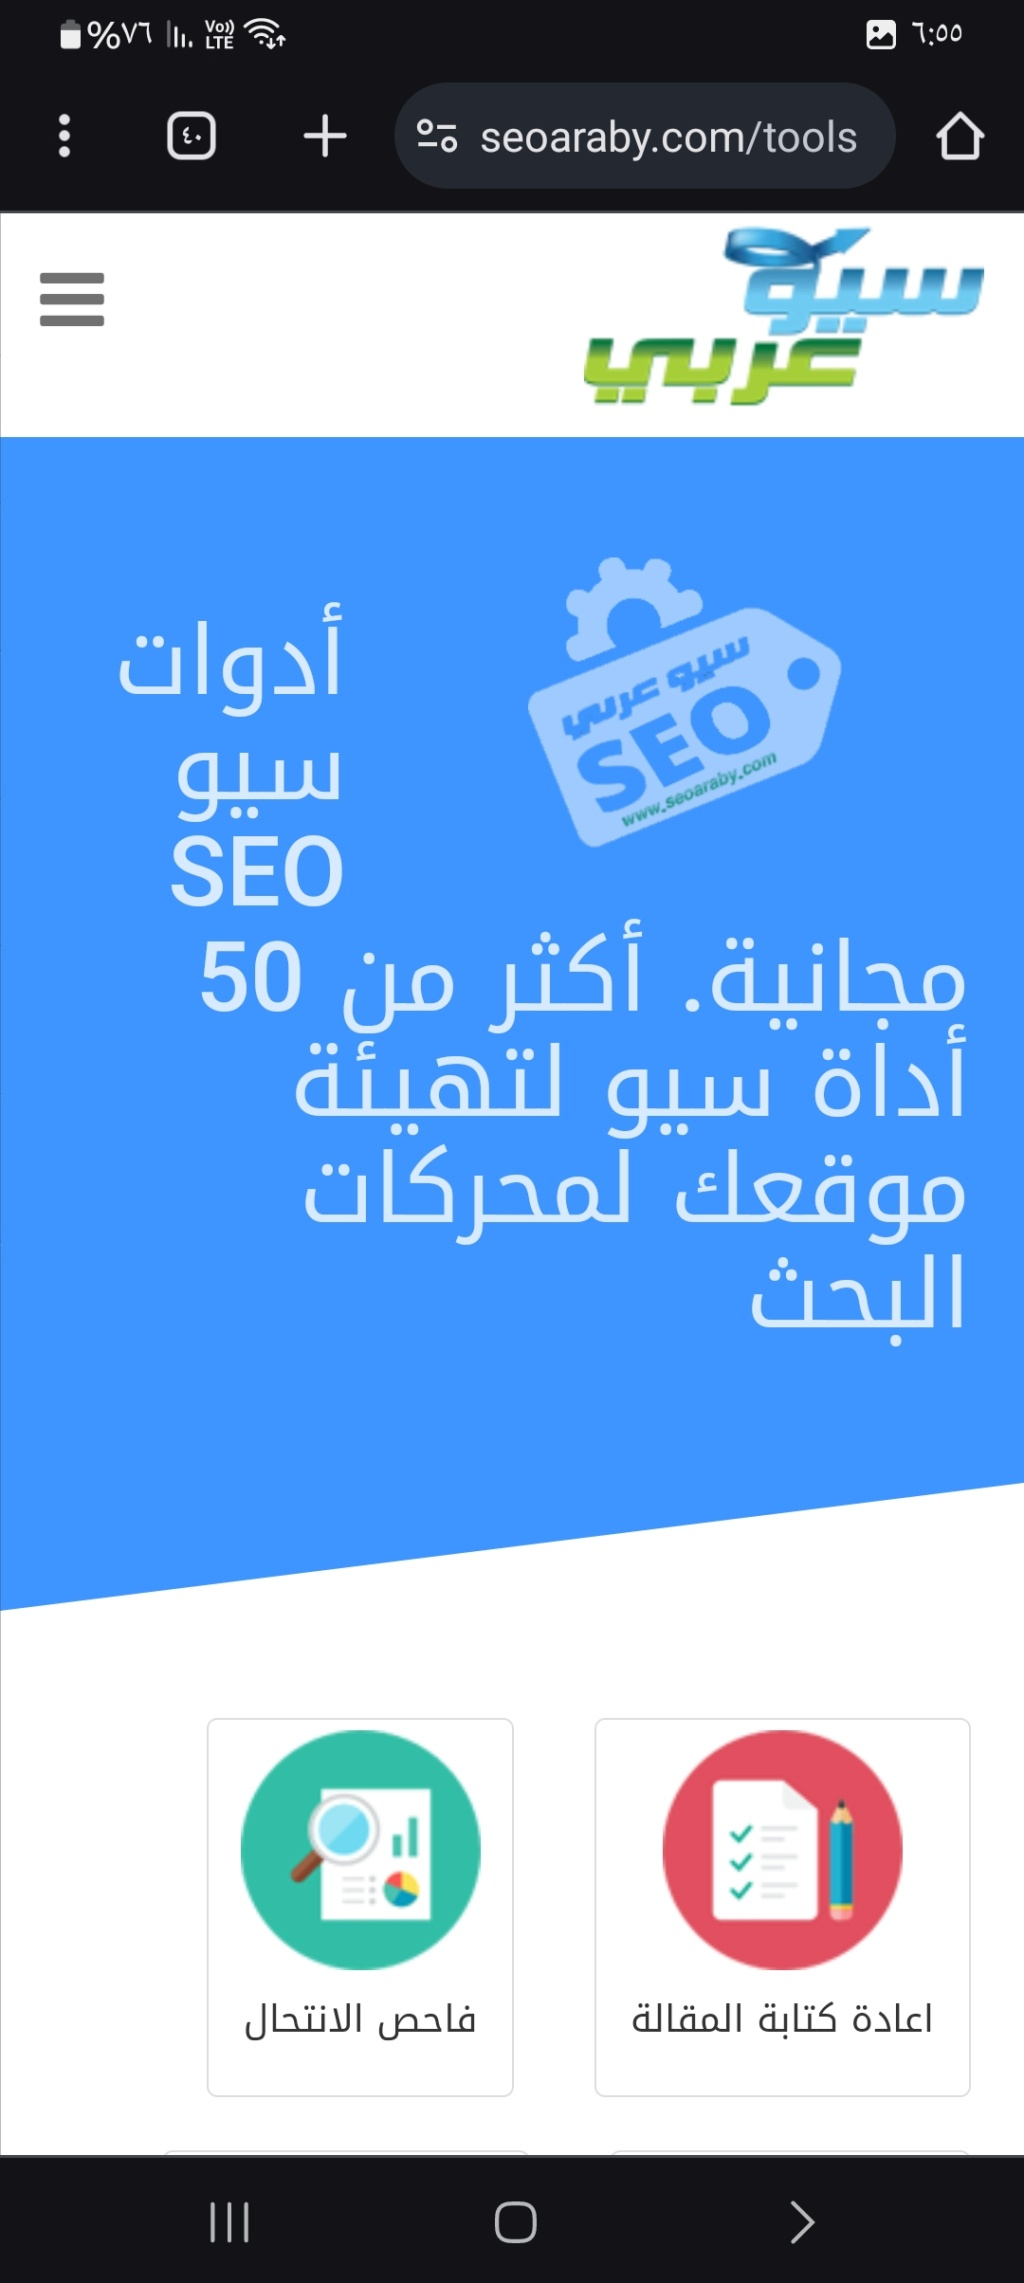 موقع عربي لتحسين سيو SEO لموقعك او موقعك واكتشاف الأخطاء بموقعك Screen14